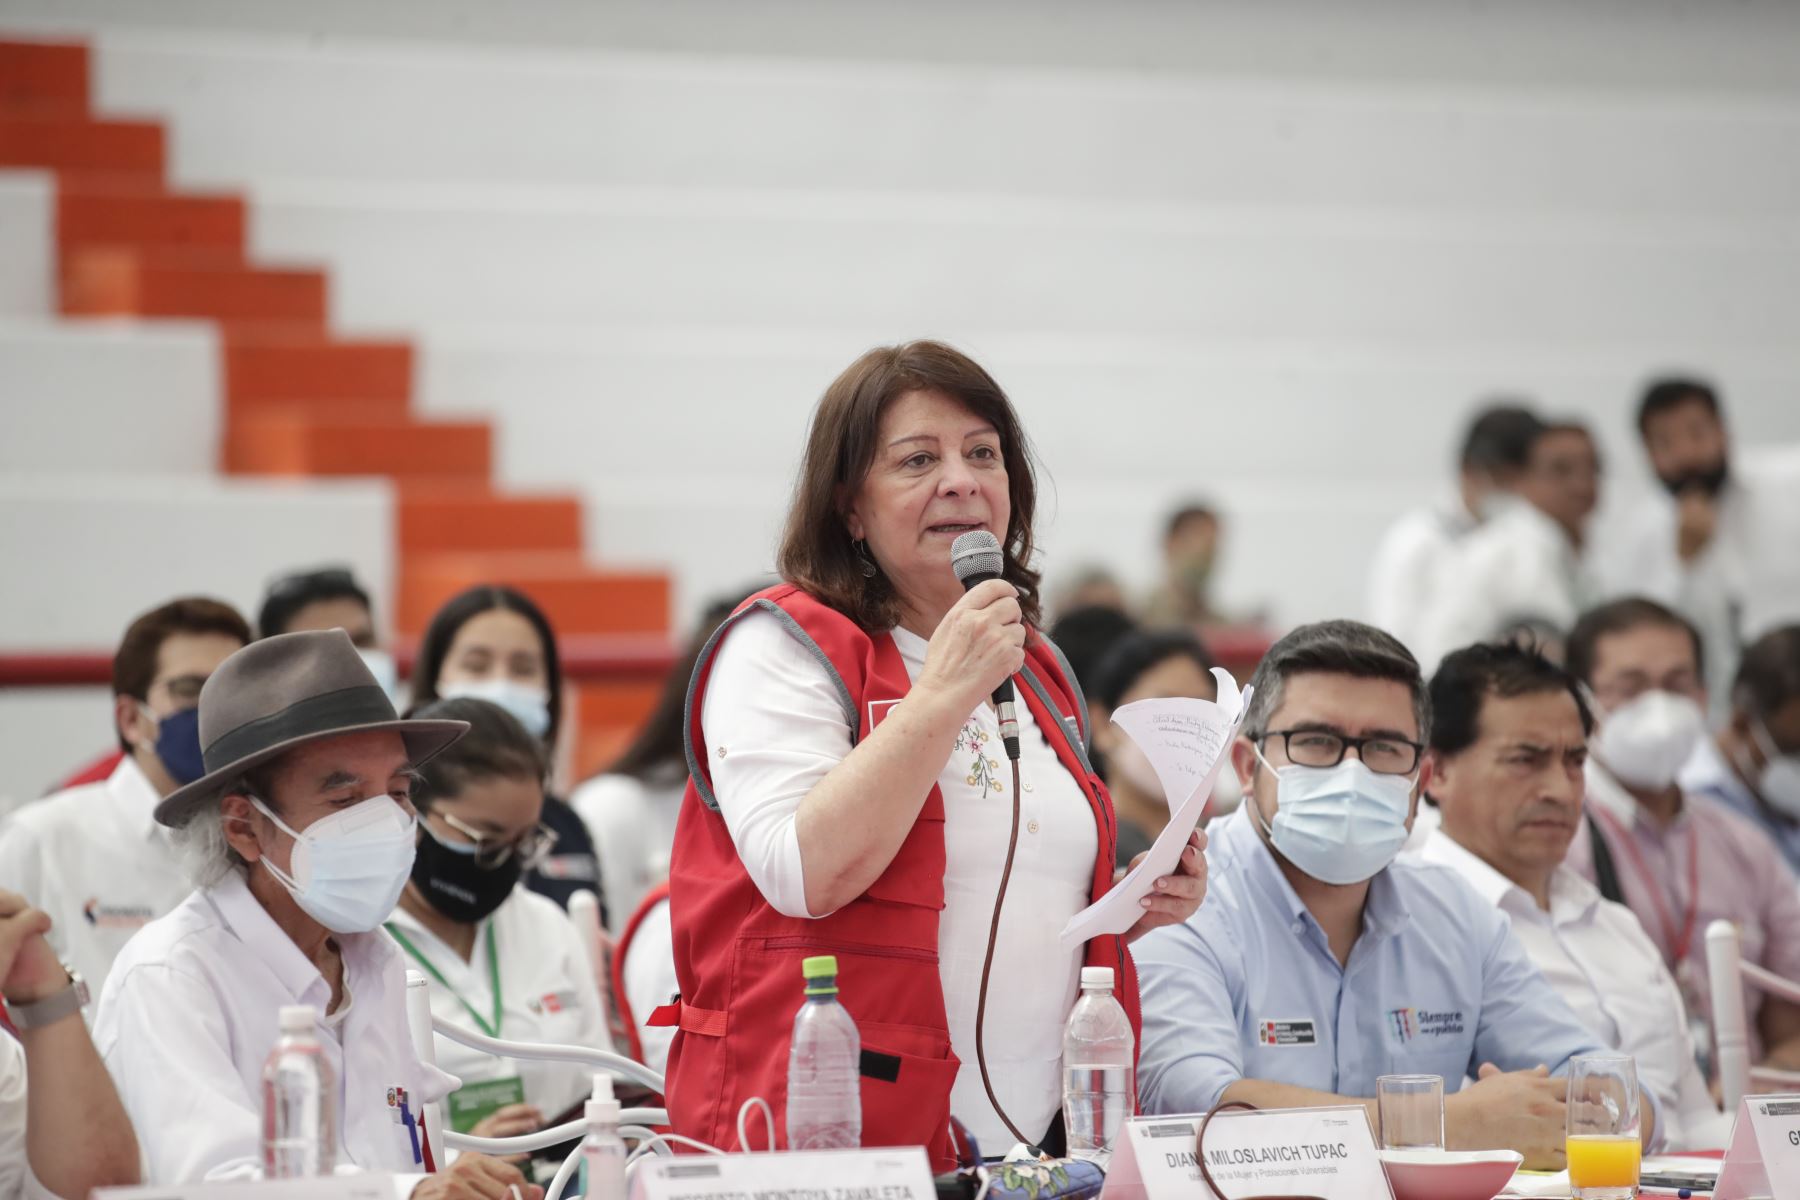 La ministra de la Mujer y Poblaciones Vulnerables, Diana Miloslavich, participó del X Consejo de Ministros Descentralizado en Tumbes, región del norte del país.
Foto: ANDINA/ Presidencia Perú